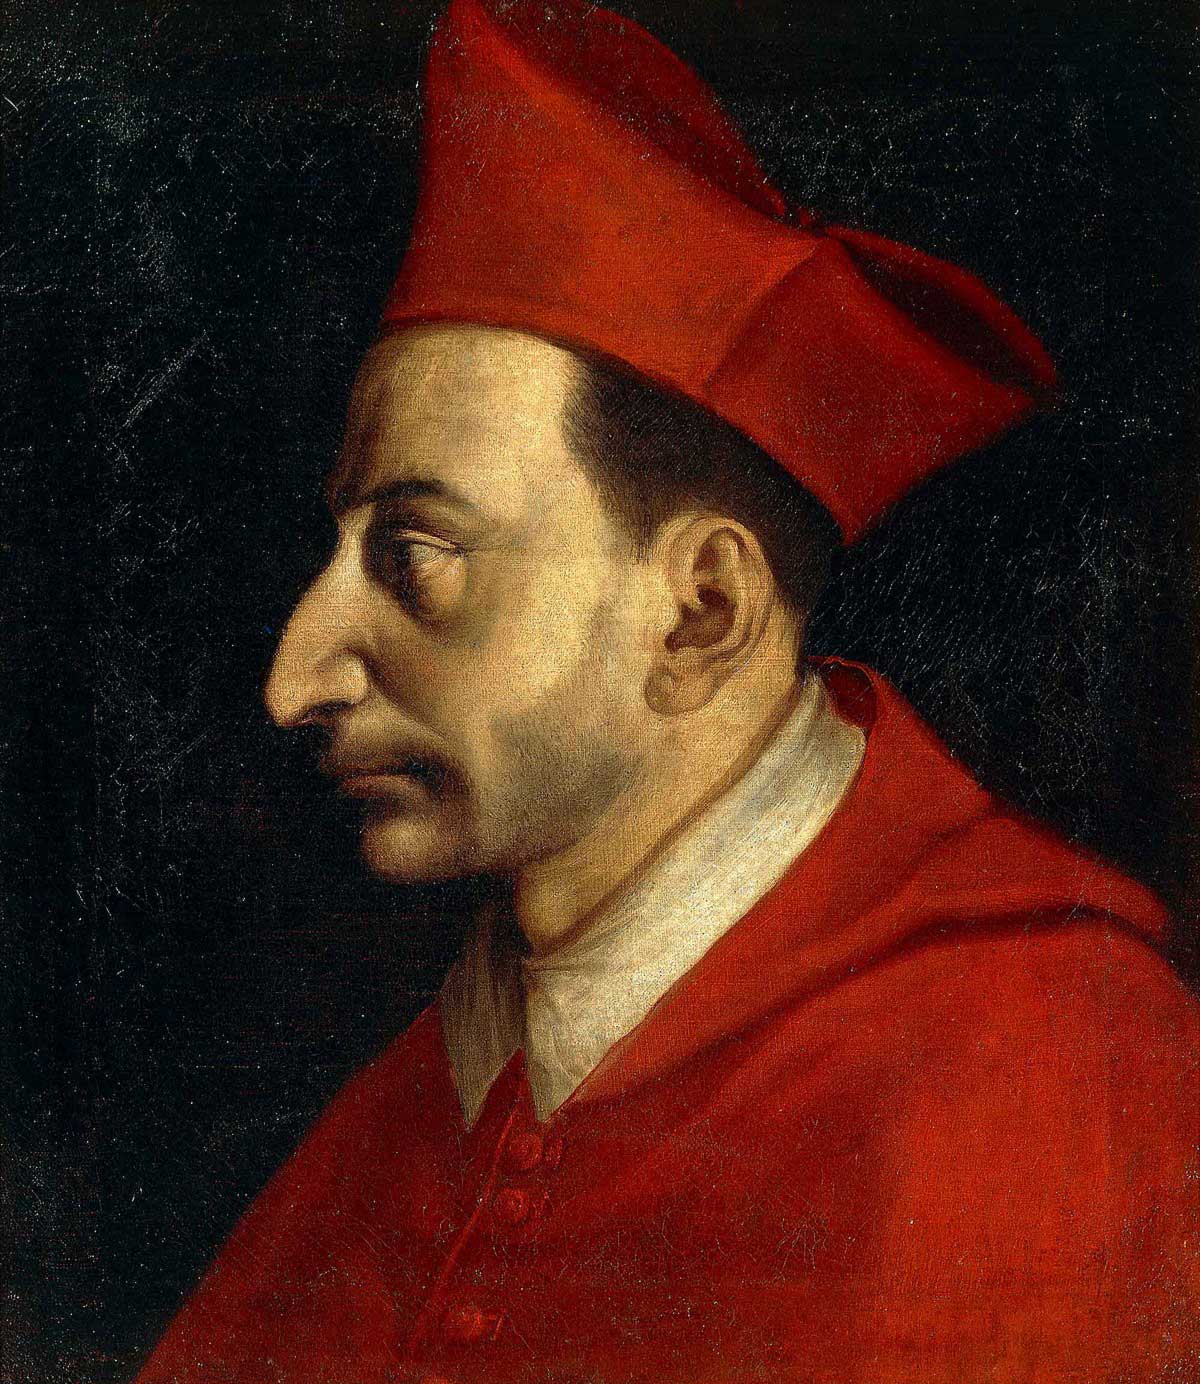 Il cardinale Carlo Borromeo (1538-1584), influente uomo politico e religioso, fervente sostenitore della Controriforma.